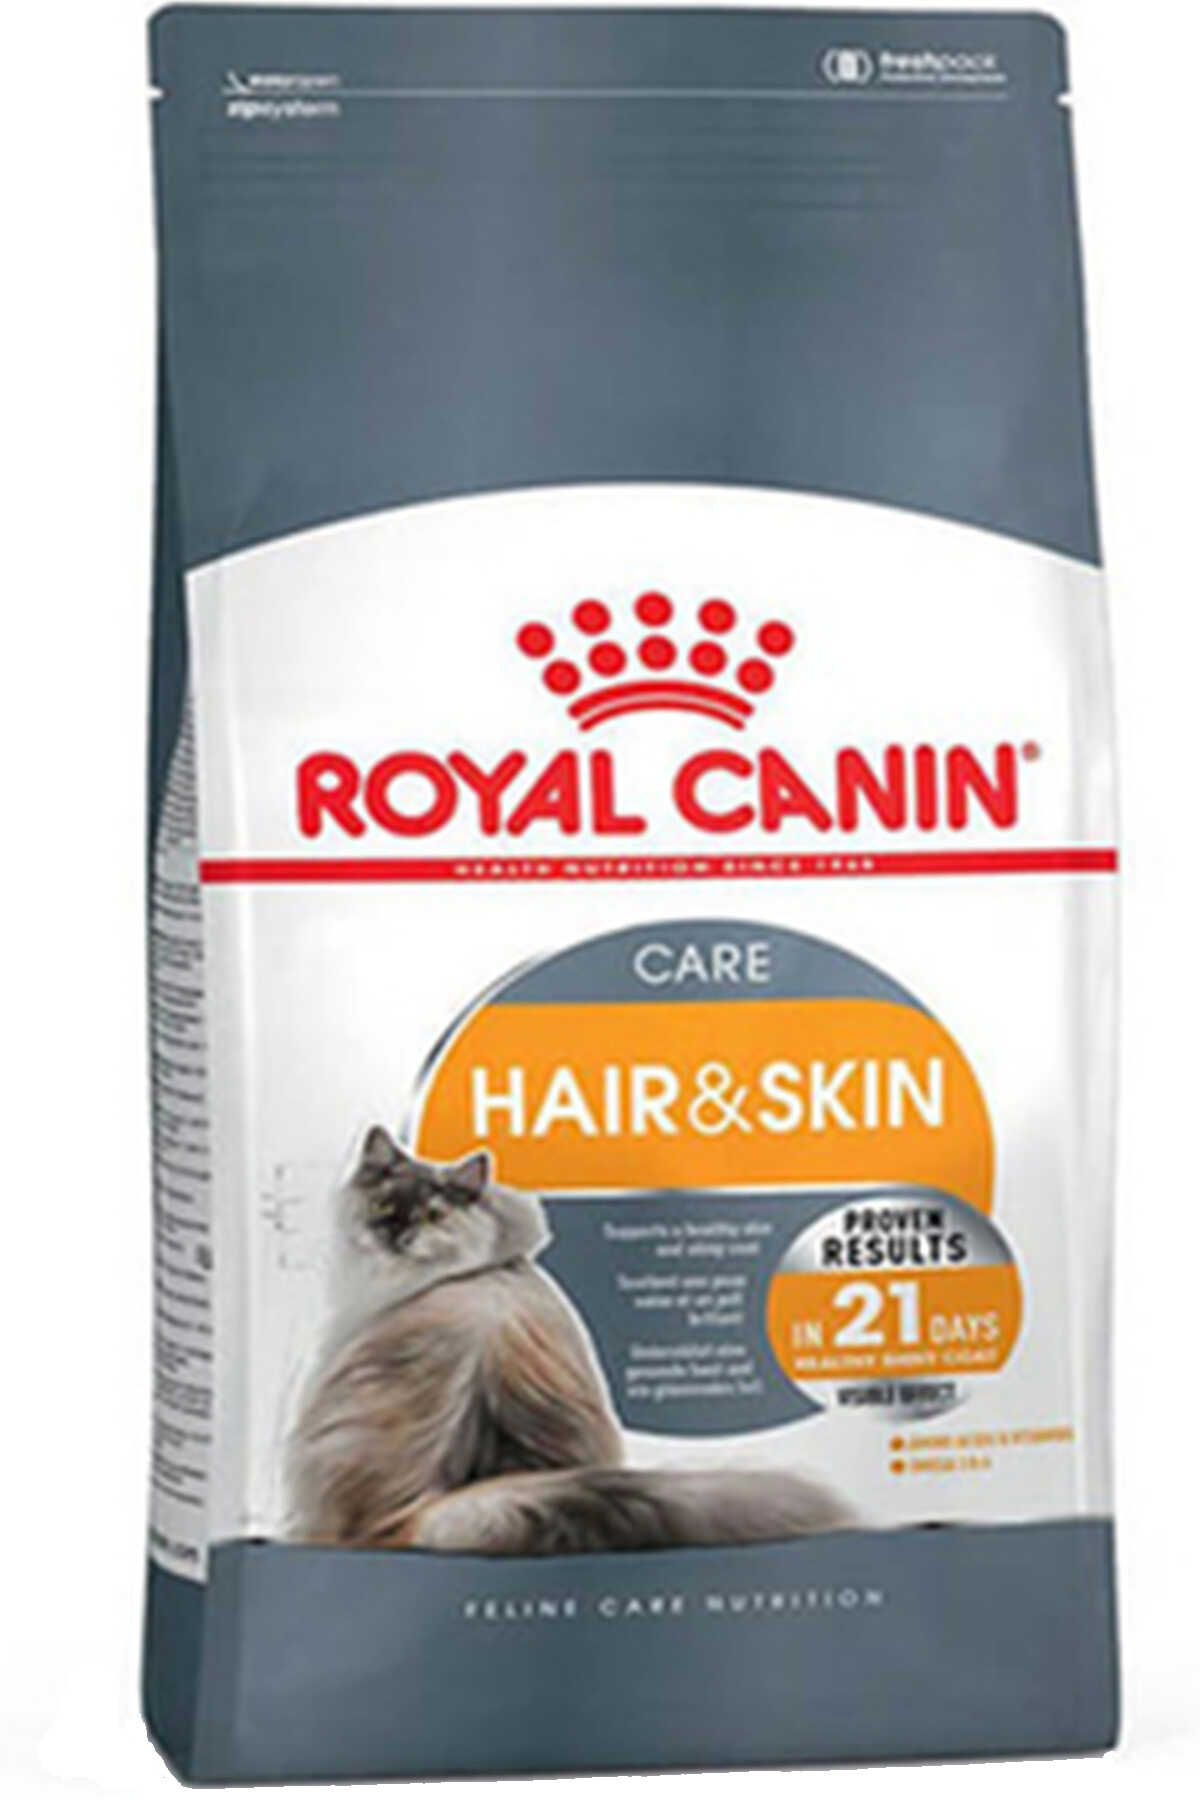 Royal Canin Hair & Skin Deri ve Tüy Sağlığı İçin Yetişkin Kedi Maması 2kg